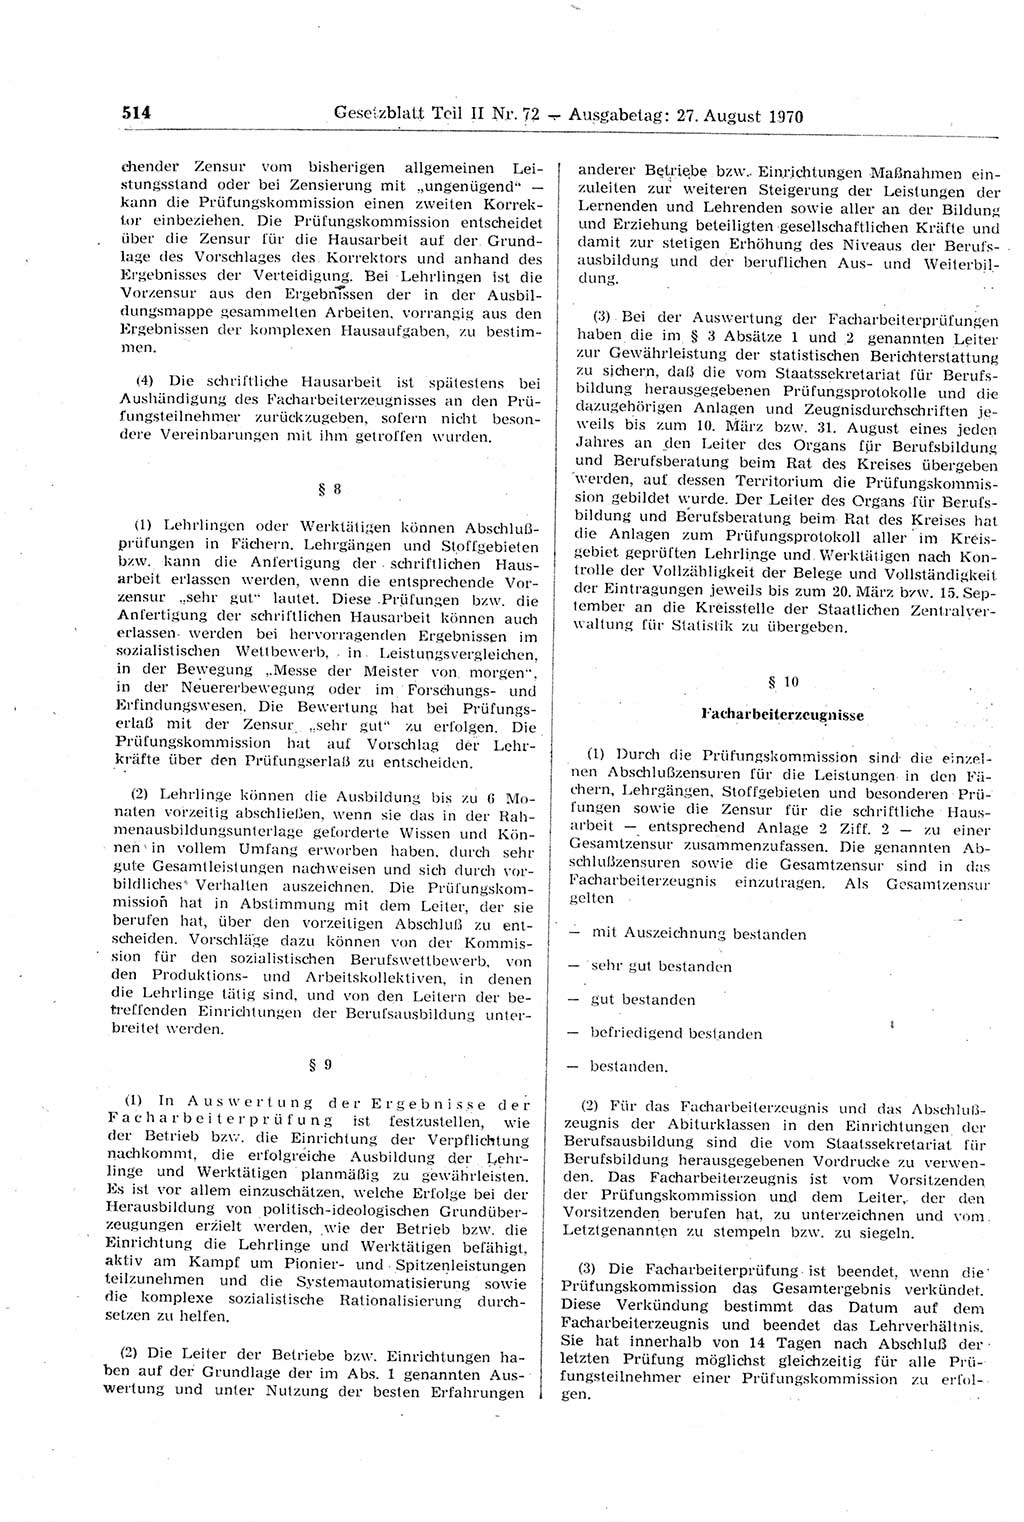 Gesetzblatt (GBl.) der Deutschen Demokratischen Republik (DDR) Teil ⅠⅠ 1970, Seite 514 (GBl. DDR ⅠⅠ 1970, S. 514)